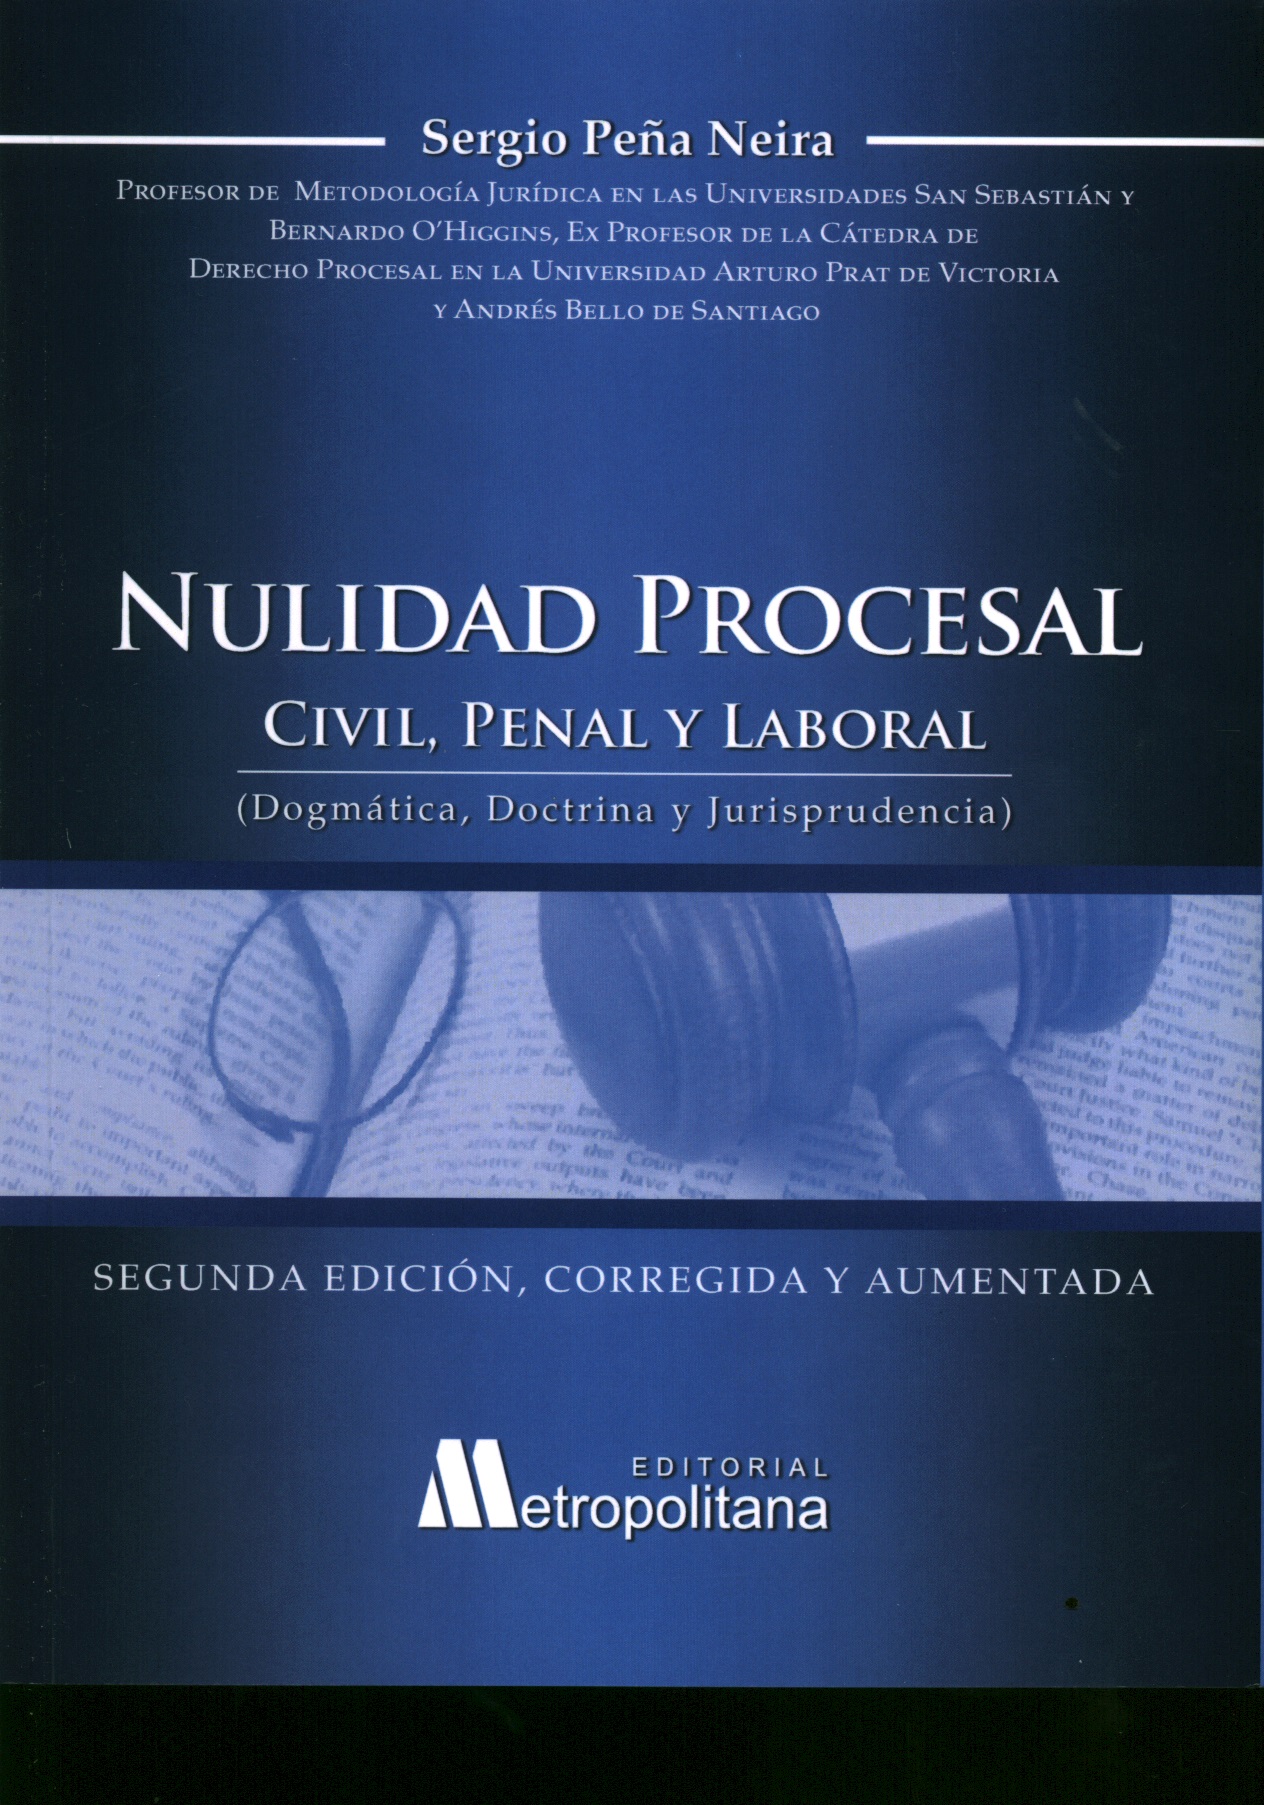 La nulidad procesal civil, penal y laboral (doctrina, dogmática y jurisprudencia)